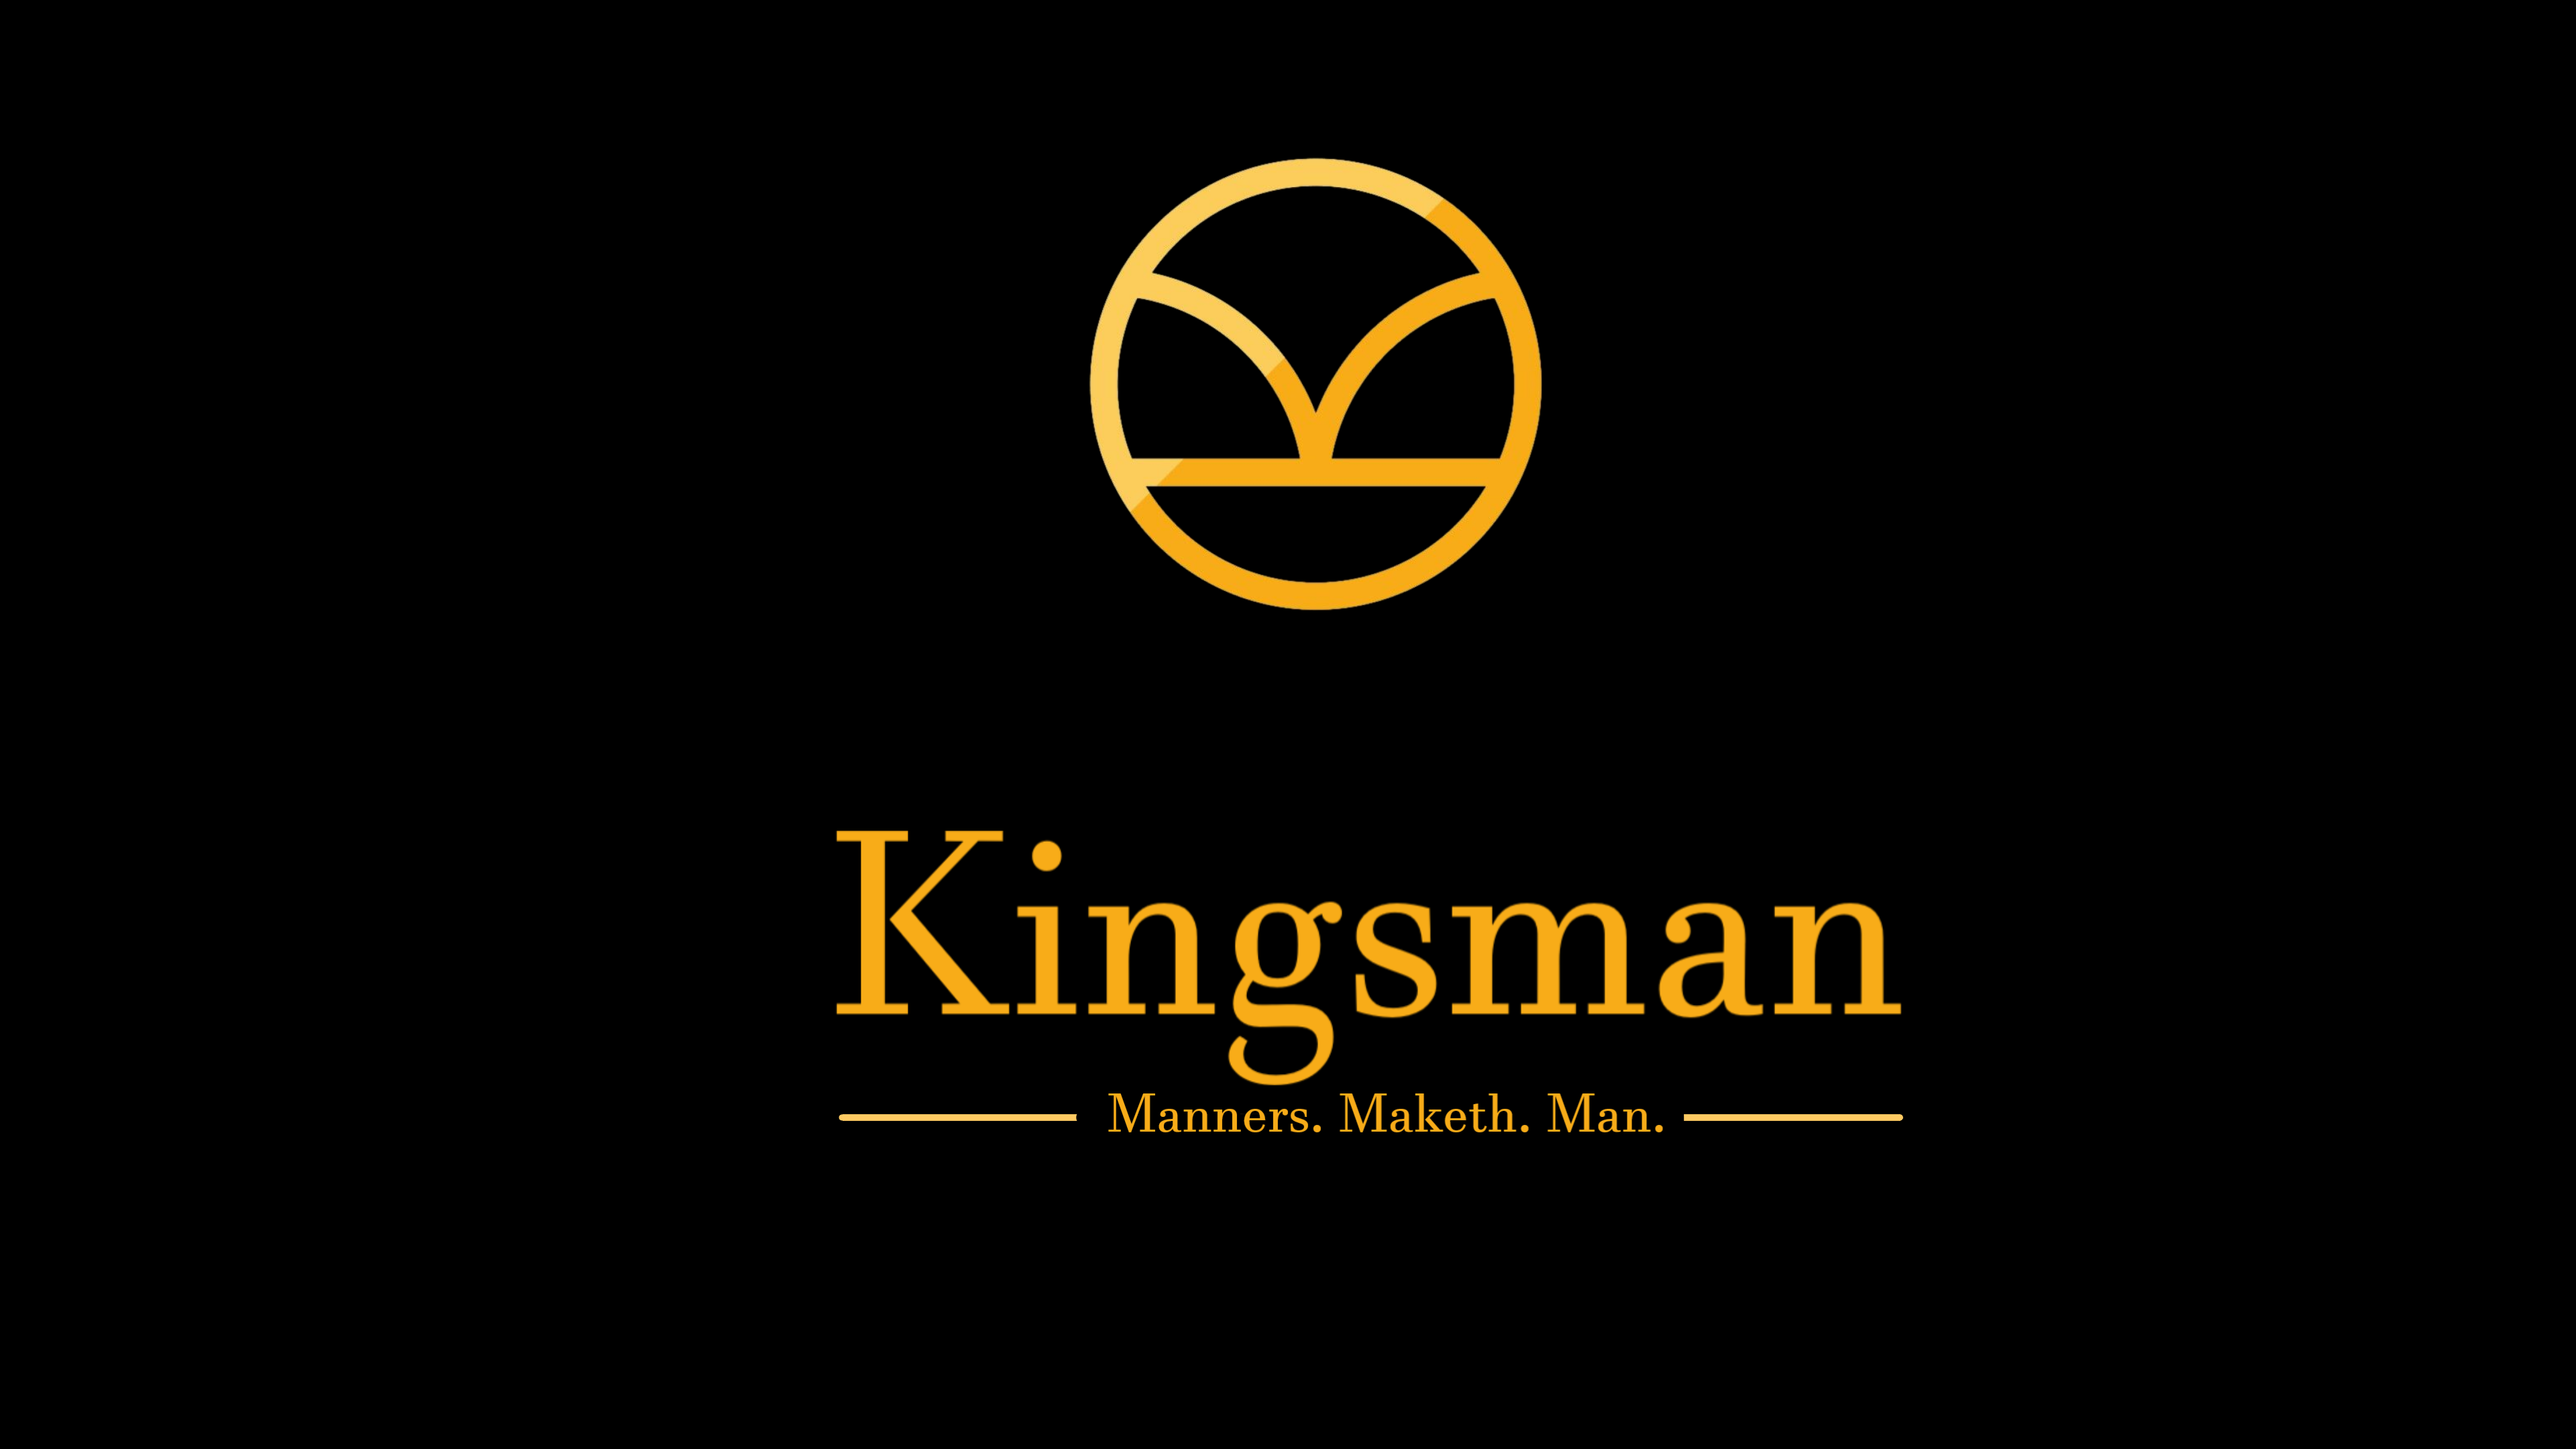 Kingsman Background